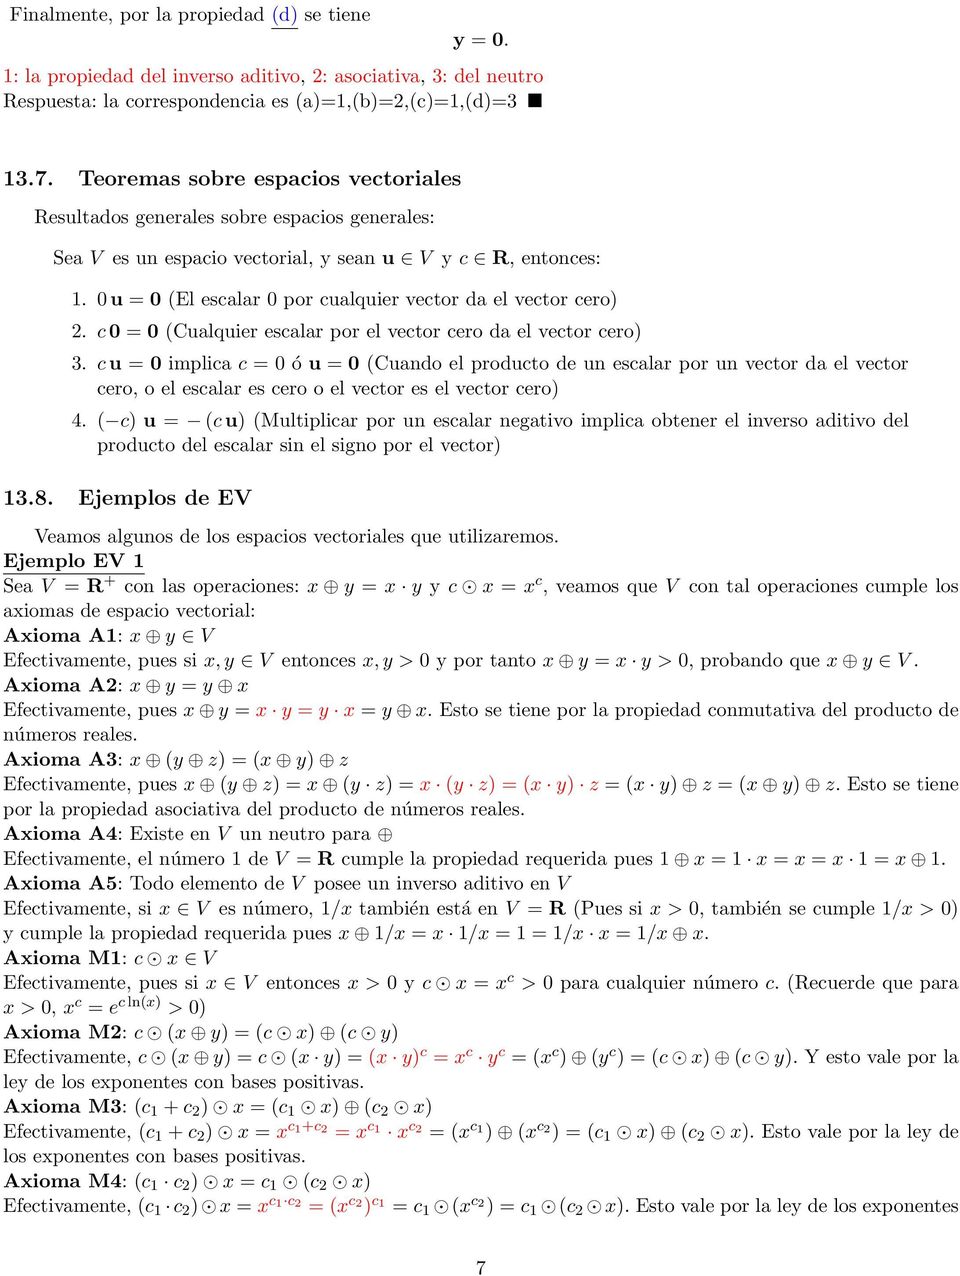 u = (El escalar por cualquier vector da el vector cero) 2. c = (Cualquier escalar por el vector cero da el vector cero) 3.